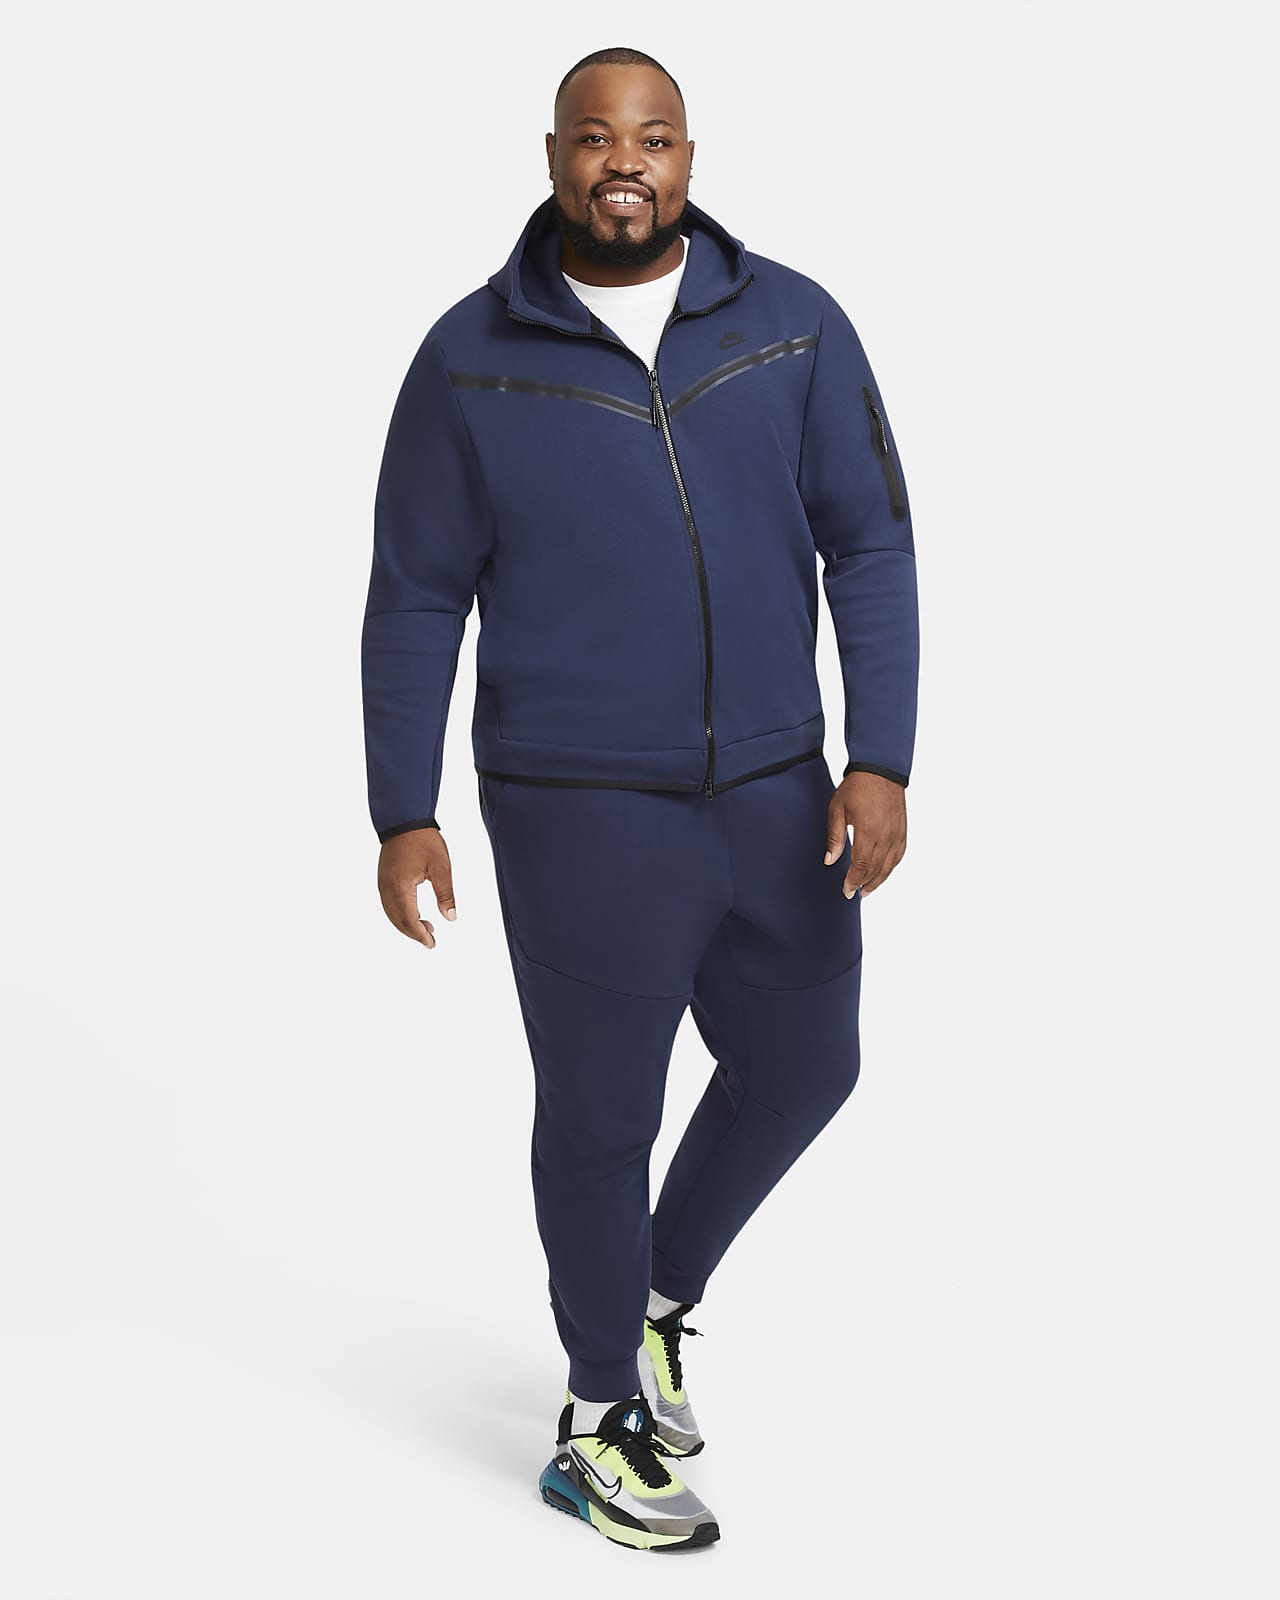 Buy > men's woven joggers nike sportswear tech fleece > in stock